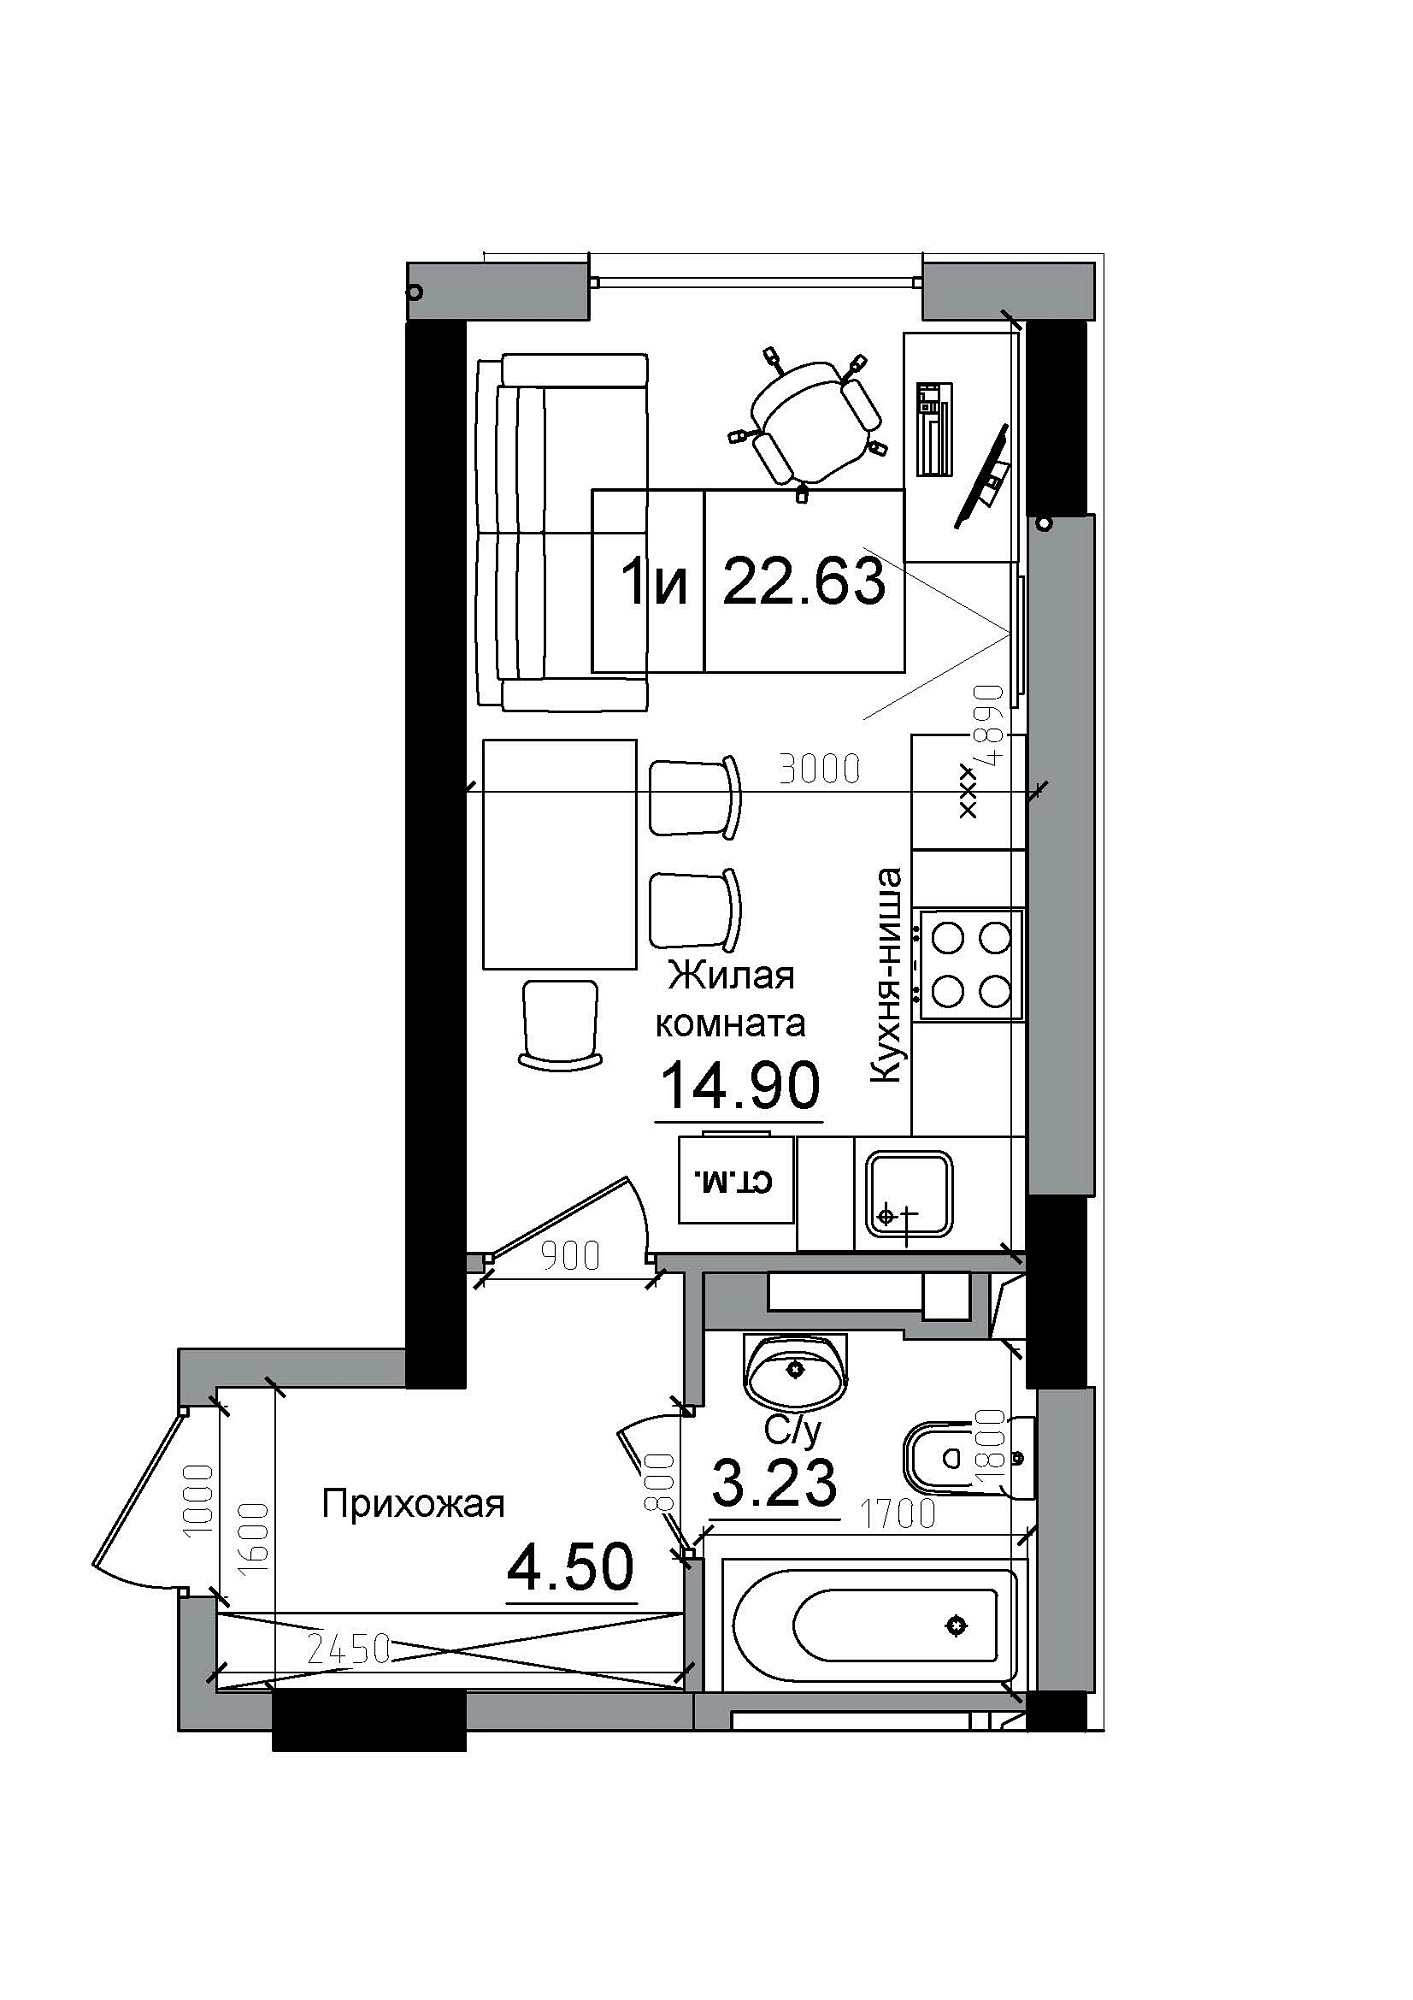 Планування Smart-квартира площею 22.63м2, AB-12-06/00011.